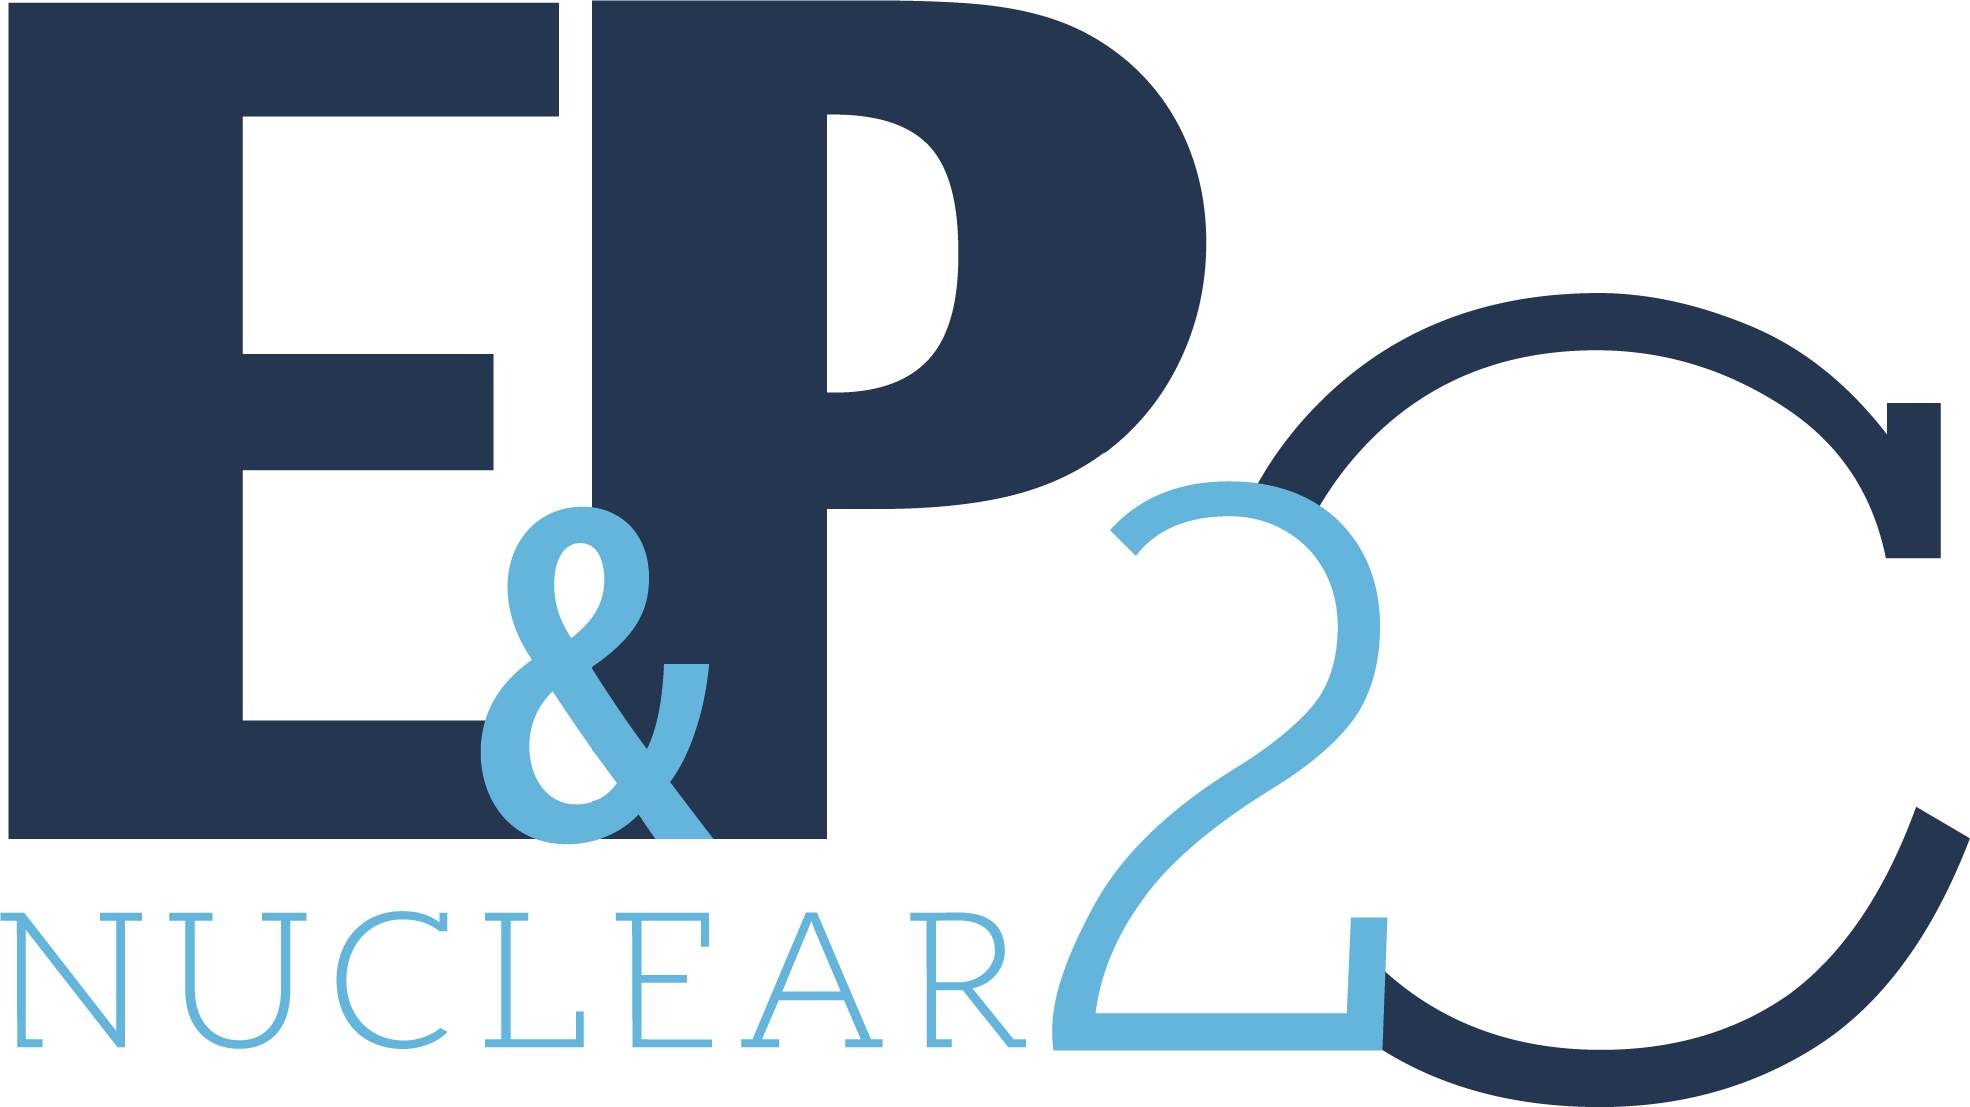 Logo EP2C Nuclear